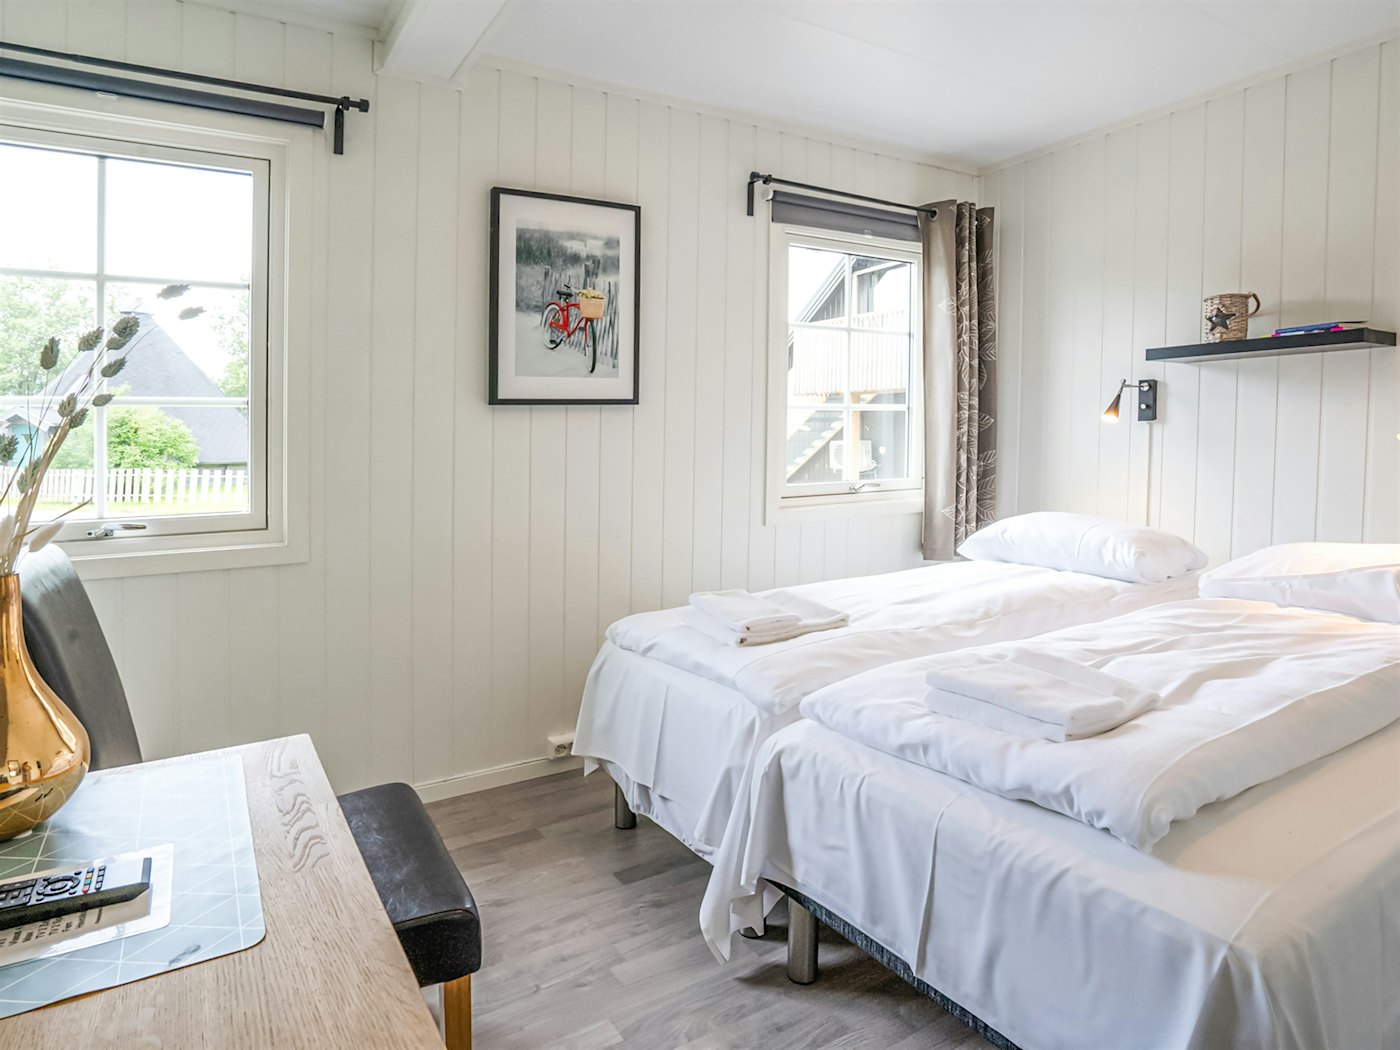 Helles Zimmer mit einem Doppelbett mit weißer Bettwäsche, das Zimmer ist mit einem Bild an der Wand und einer Vase dekoriert. Foto